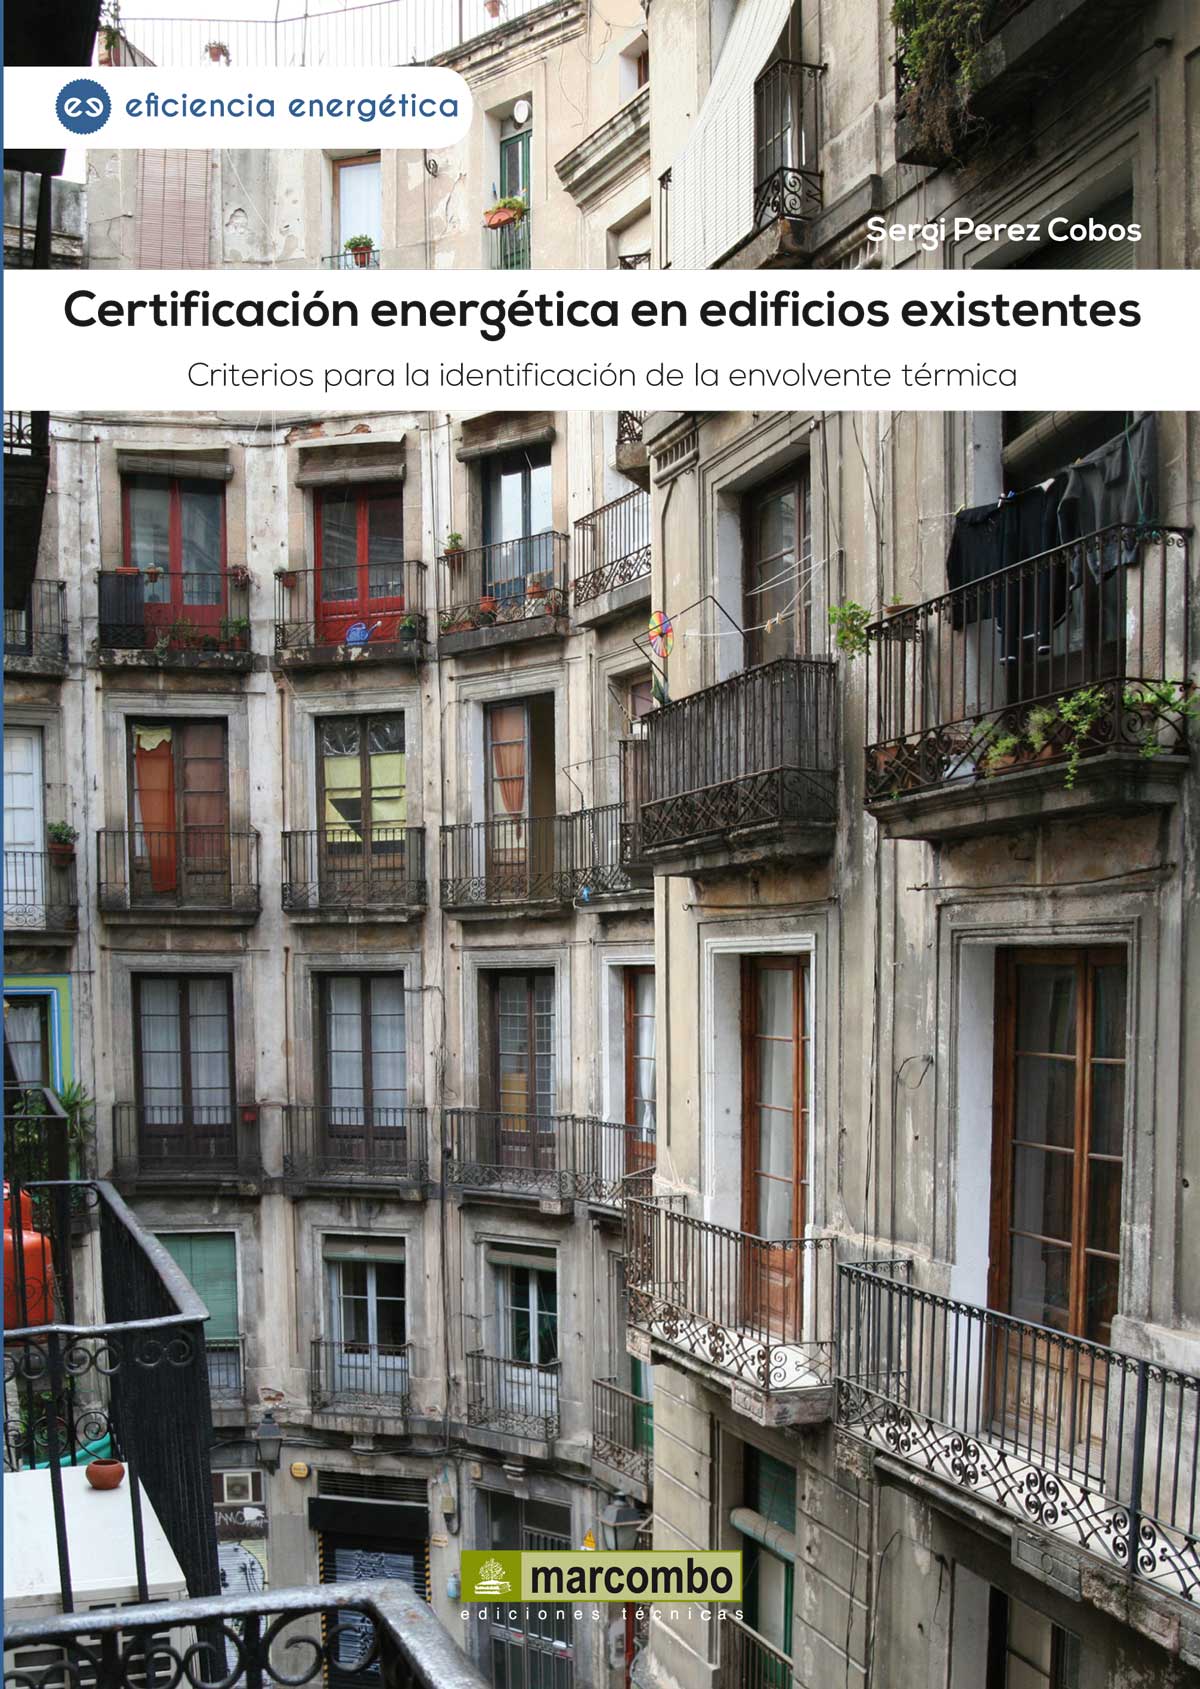 Certificación energética en edificios existentes: Criterios para la identificación de la envolvente térmica